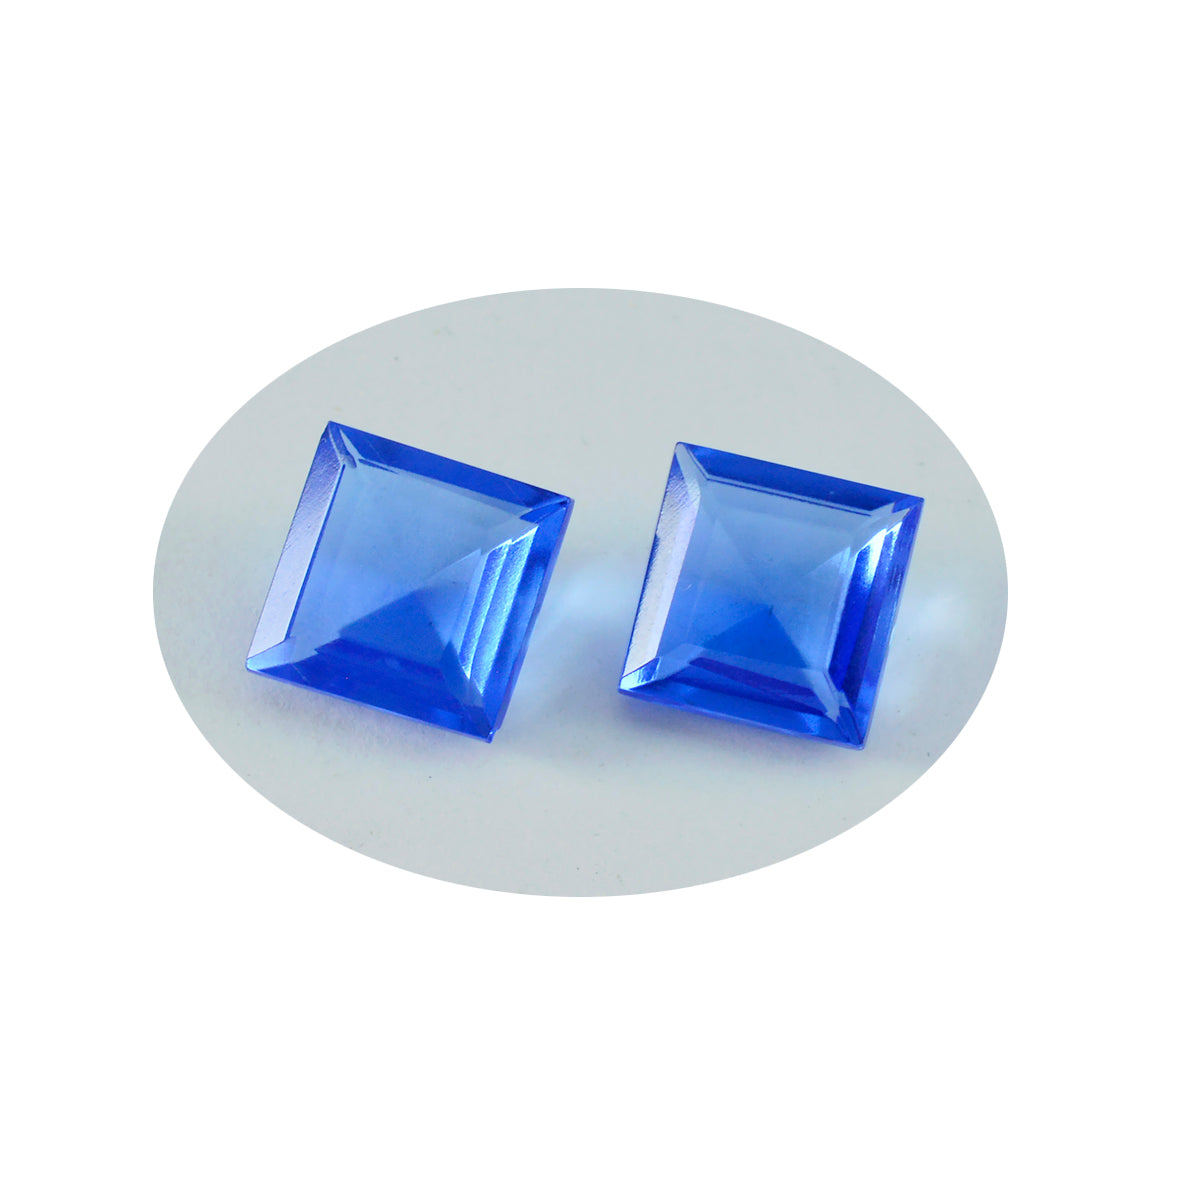 Riyogems 1pc saphir bleu cz facettes 13x13mm forme carrée excellente qualité pierre précieuse en vrac